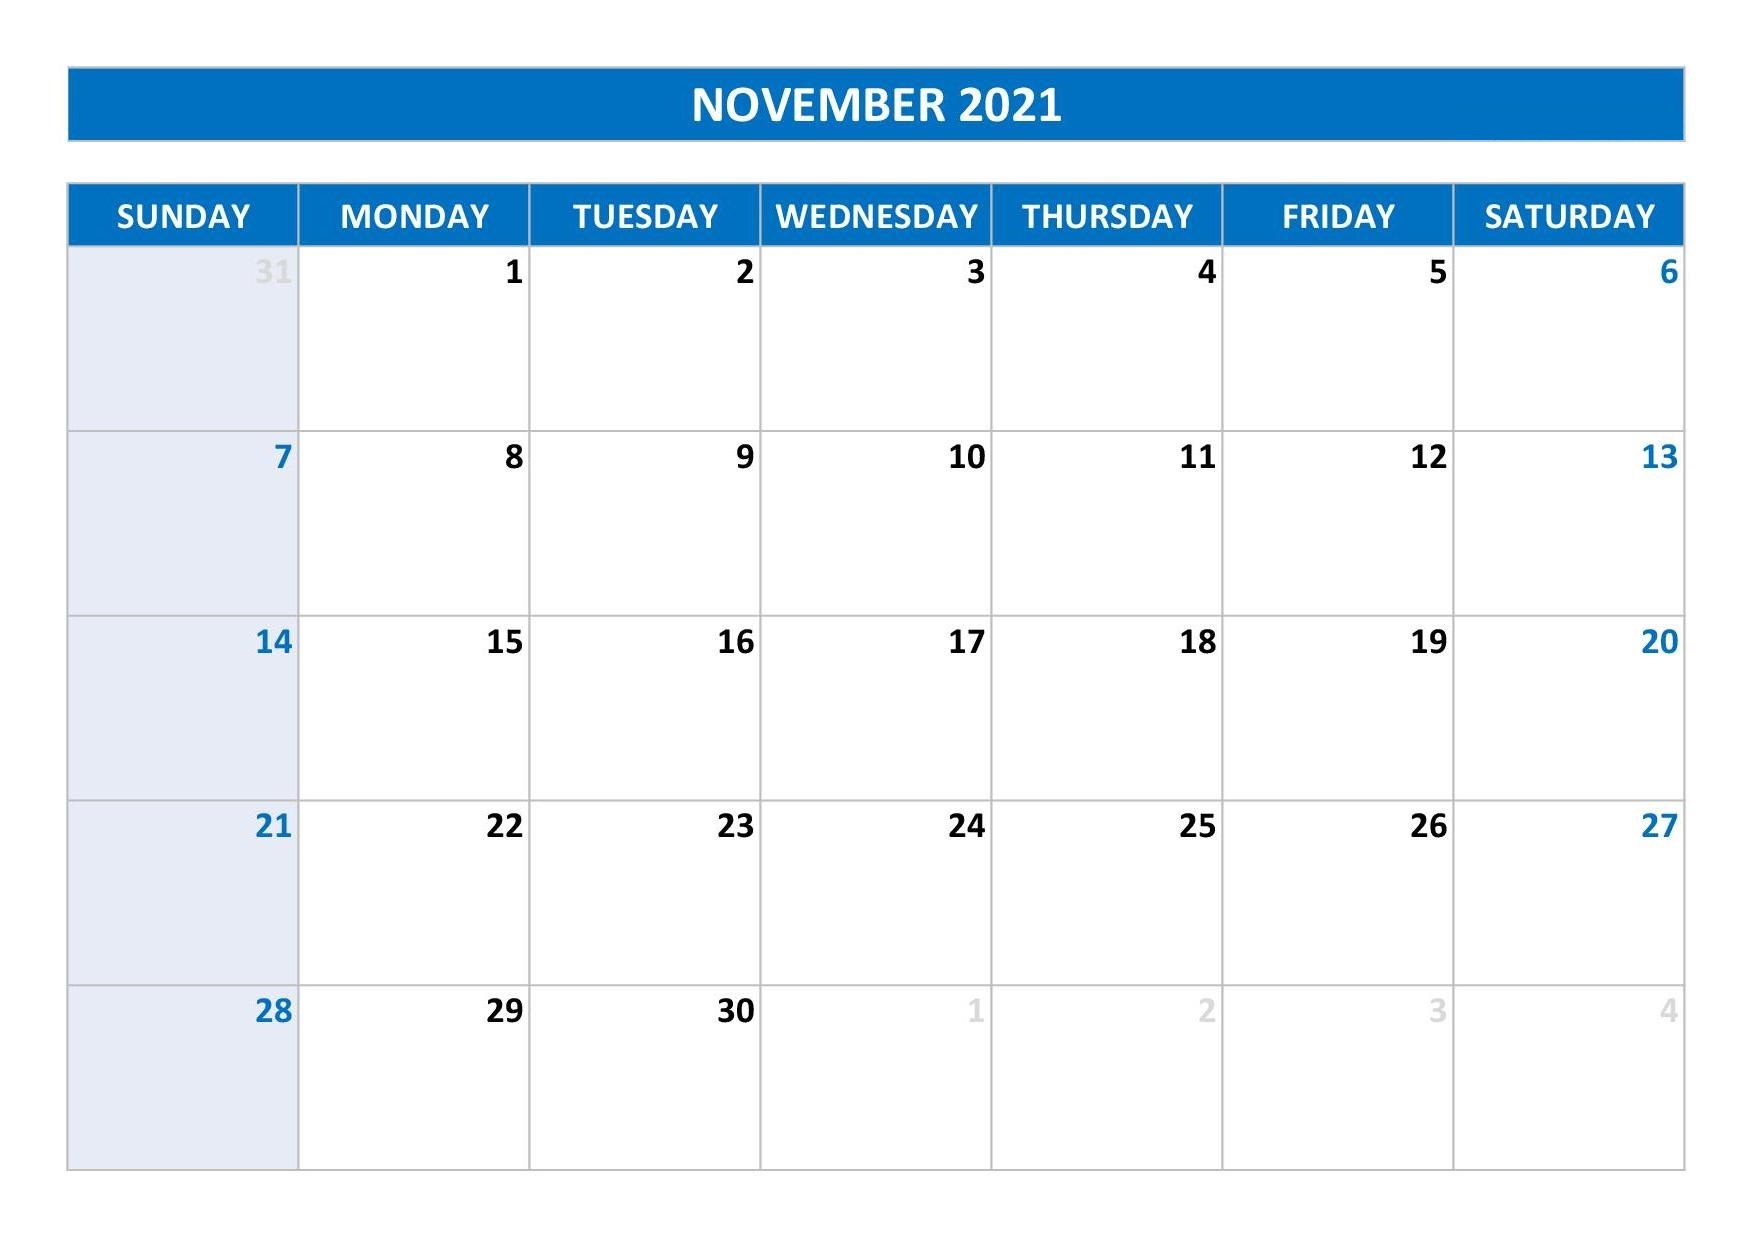 November 2021 Calendar Template Design for PPT